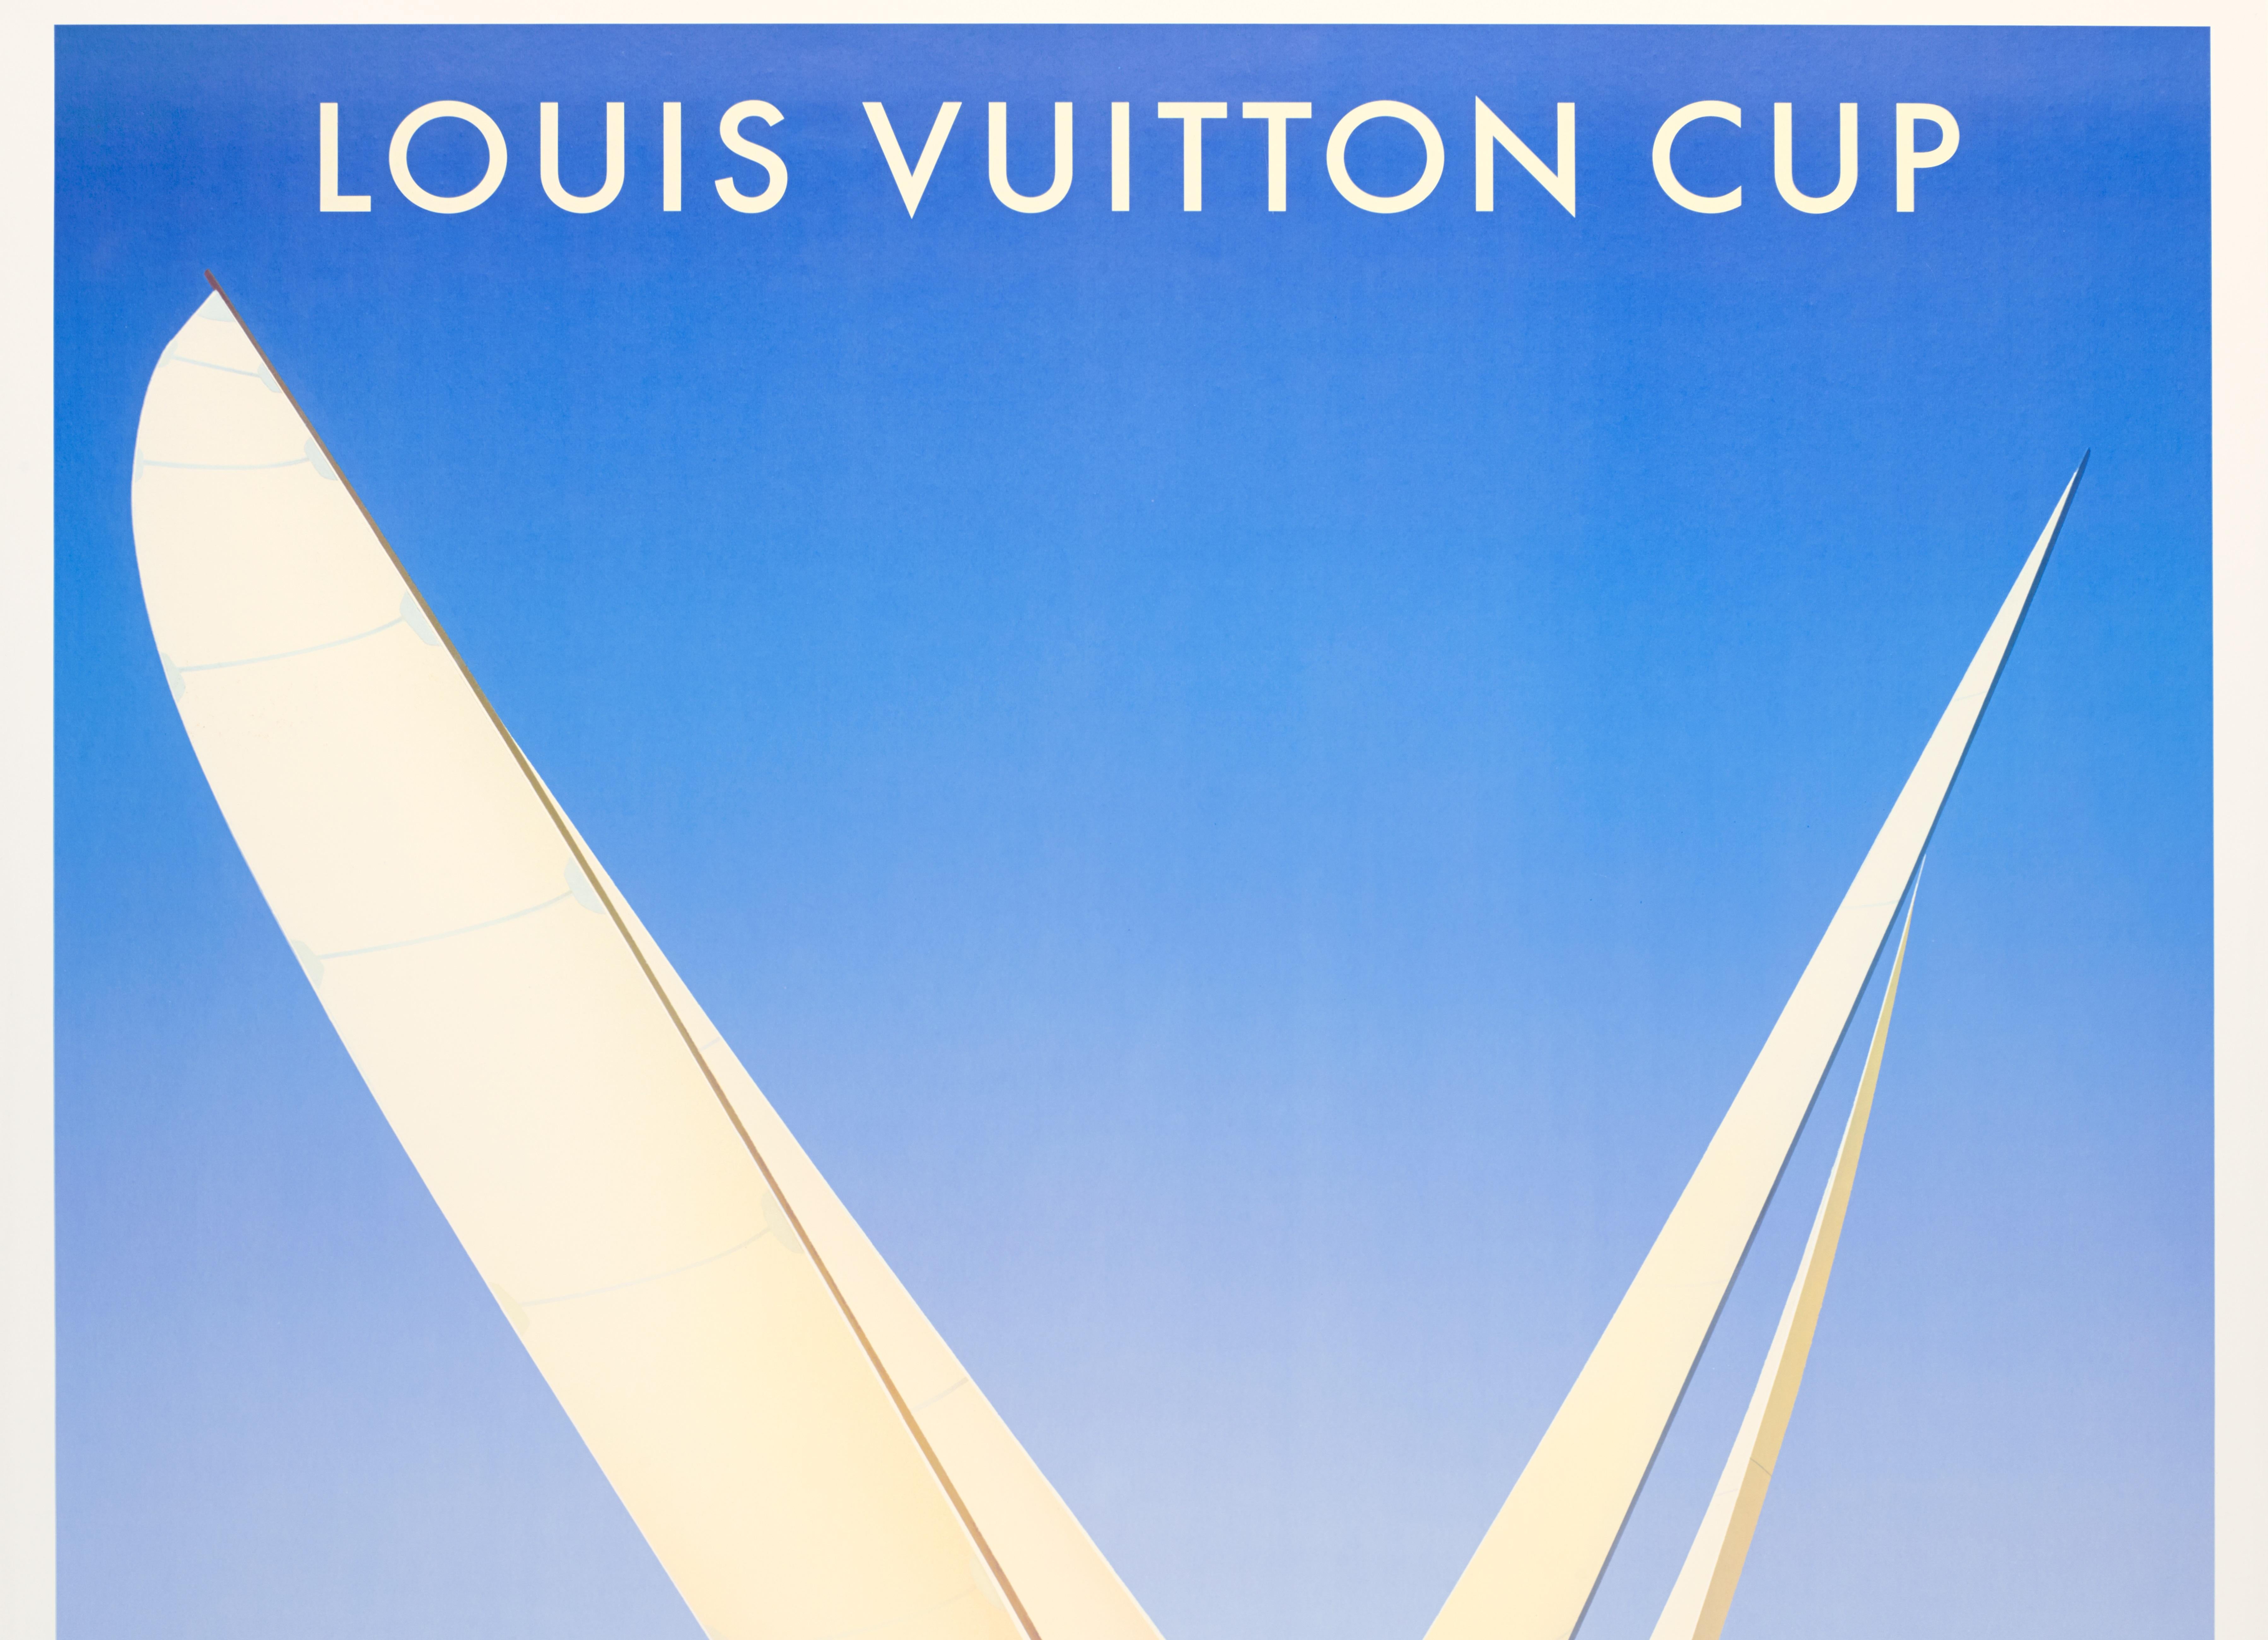 Razzia, affiche originale du bateau Louis Vuitton, Auckland, Nouvelle-Zélande, bateau à voile, 2002

Artistics : Razzia
Titre : Coupe Louis Vuitton - Nouvelle-Zélande - octobre 2002 - janvier 2003
Date : 2002
Taille (l x h) : 48 x 60,2 in / 122 x